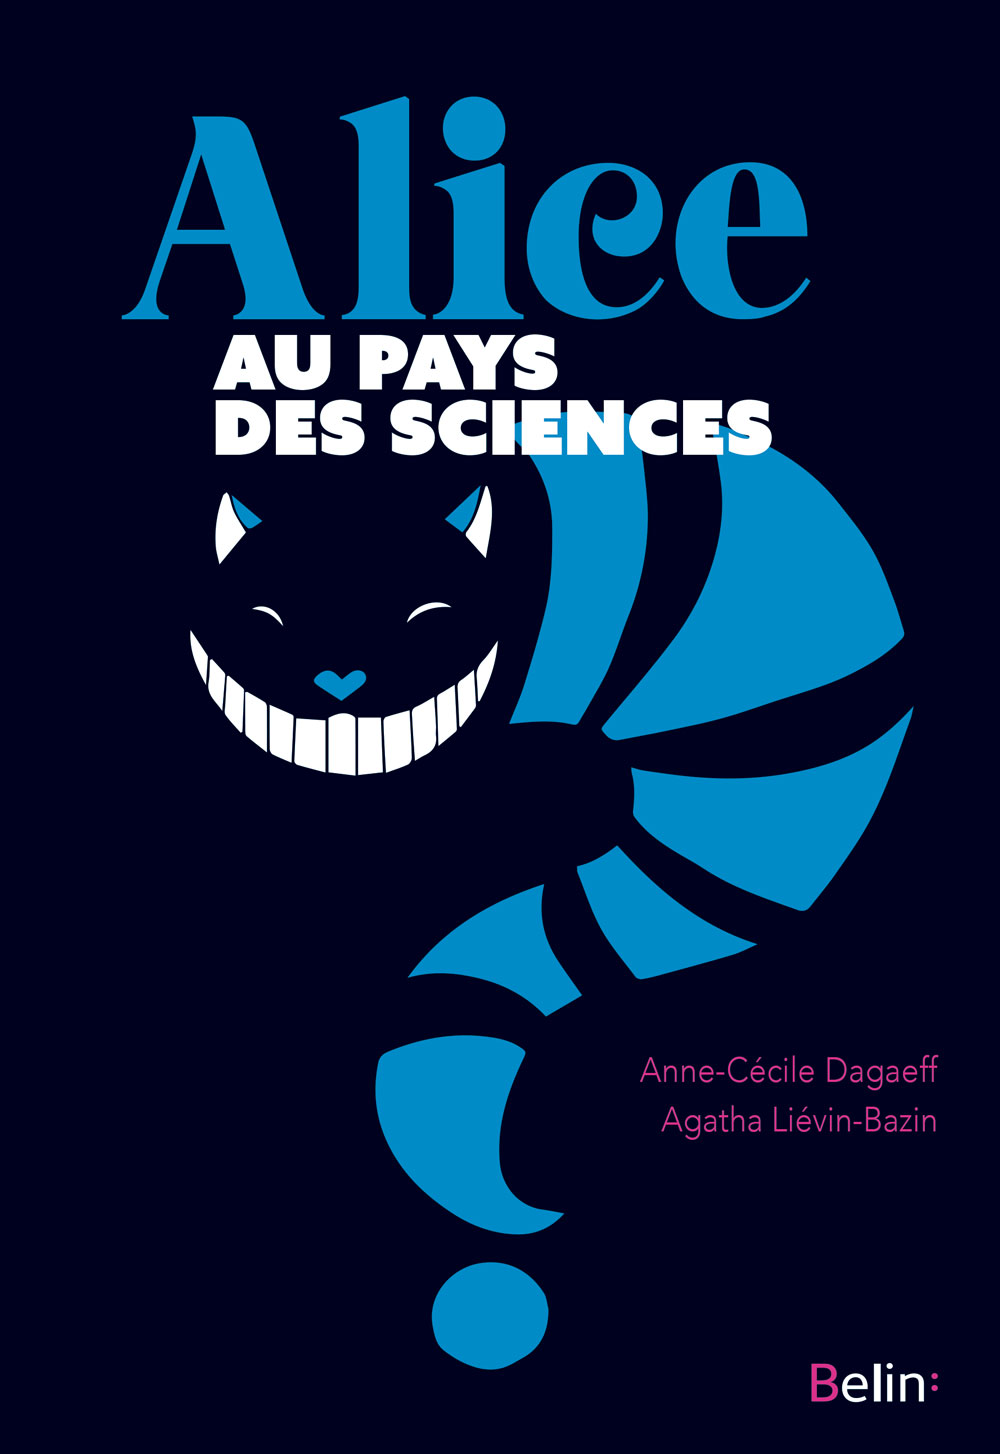 Alice au pays des sciences - Agatha Liévin-Bazin